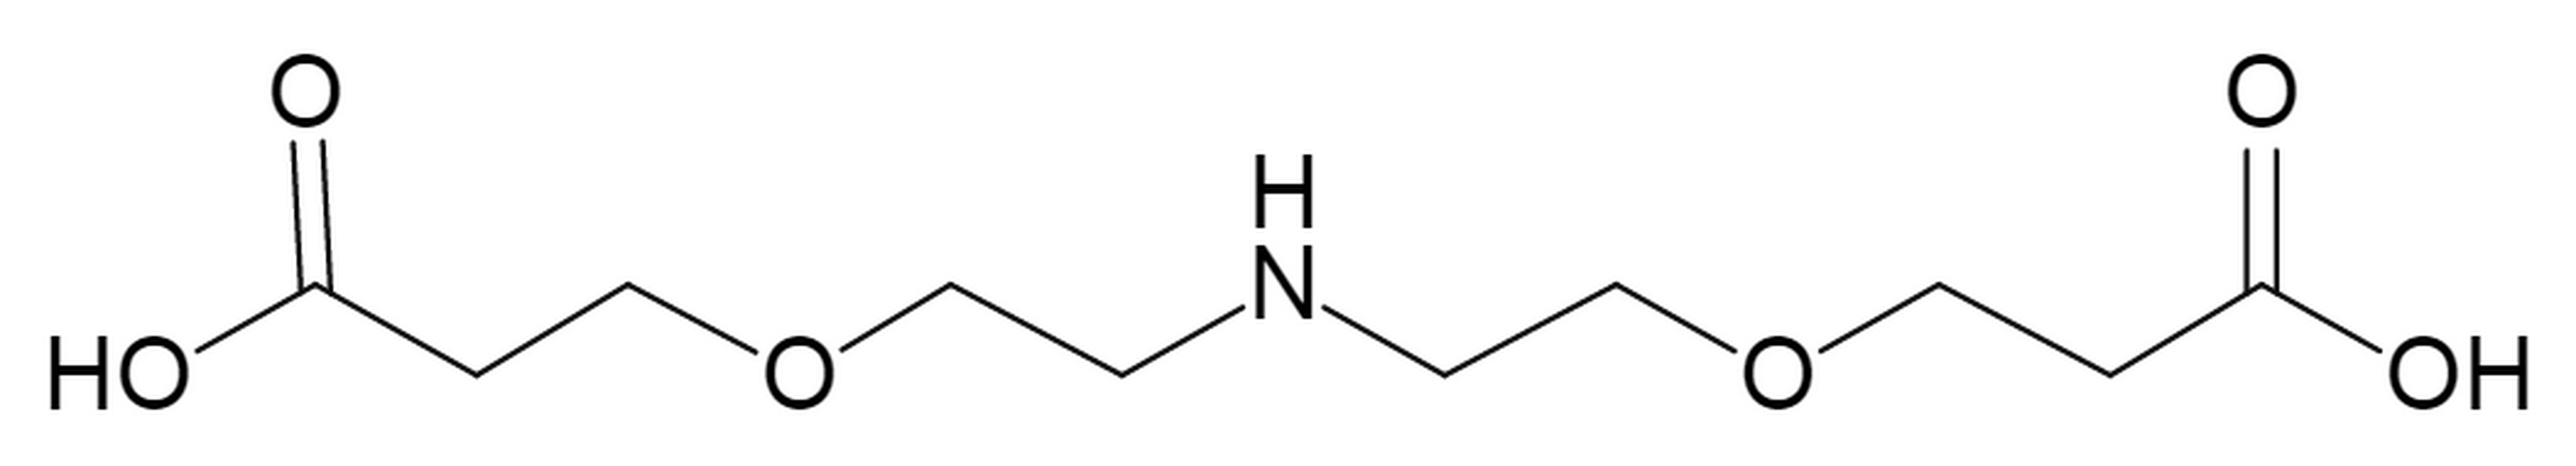 NH-bis(PEG1-acid)